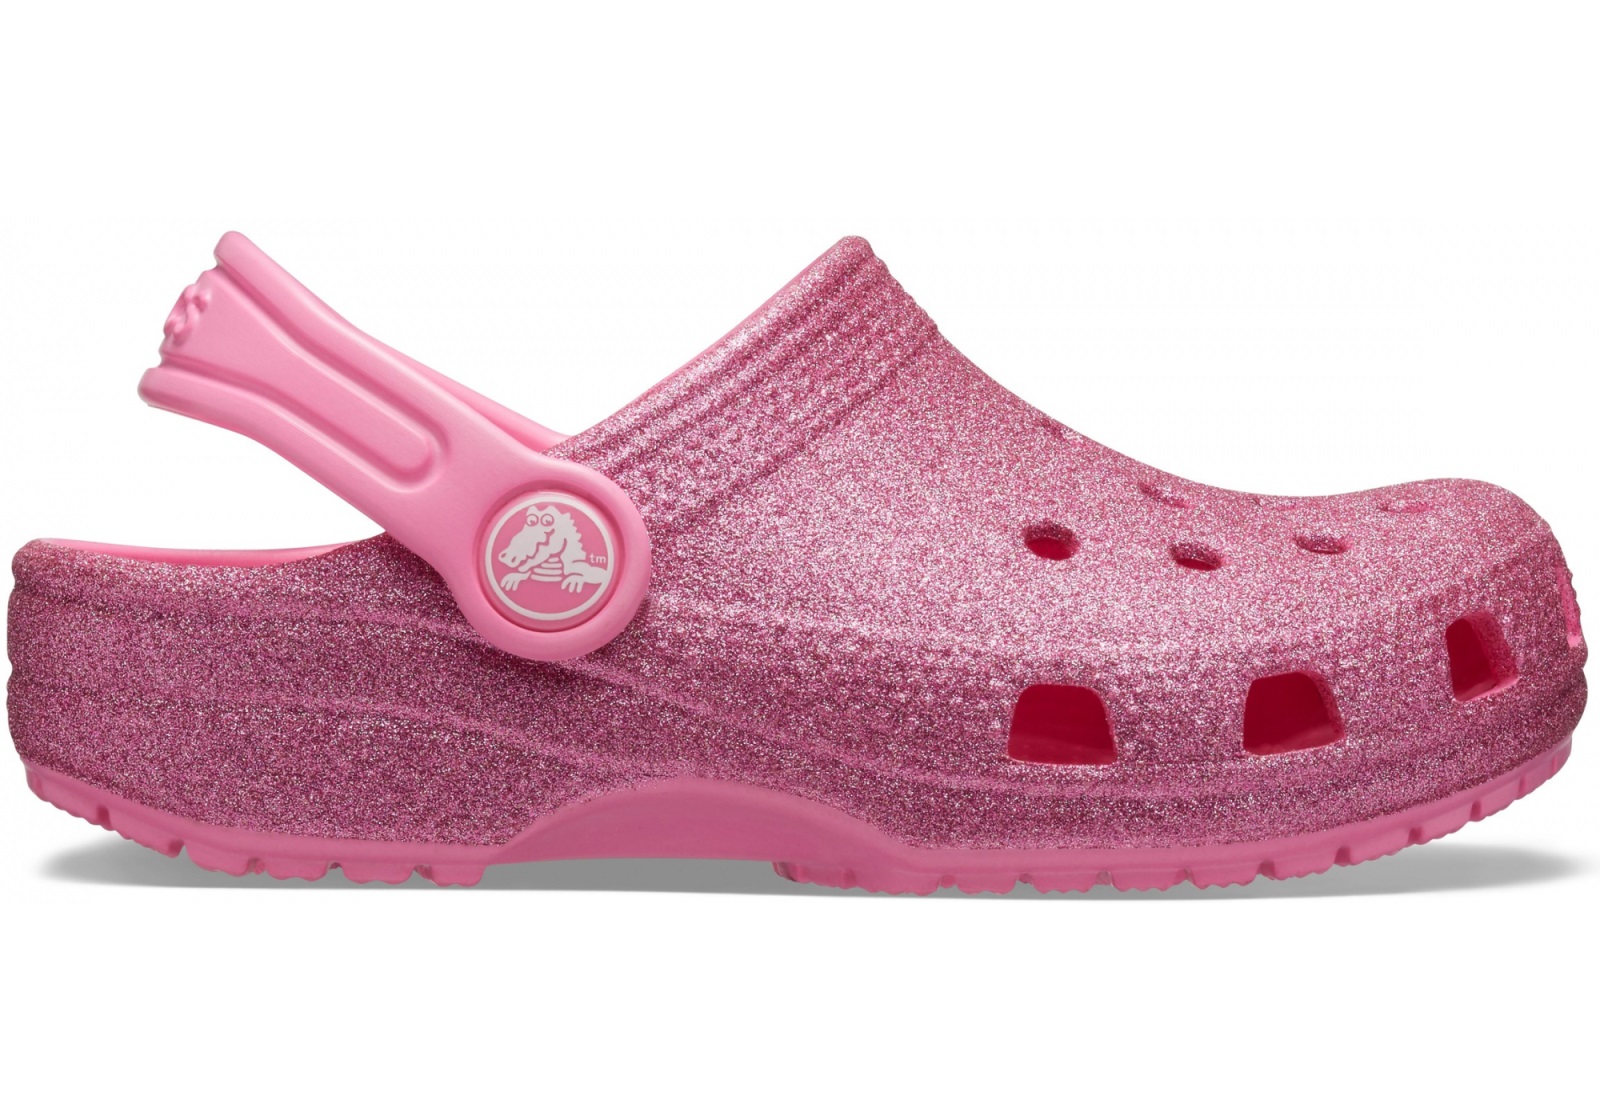 Dětské boty crocs classic glitter růžová 34-35